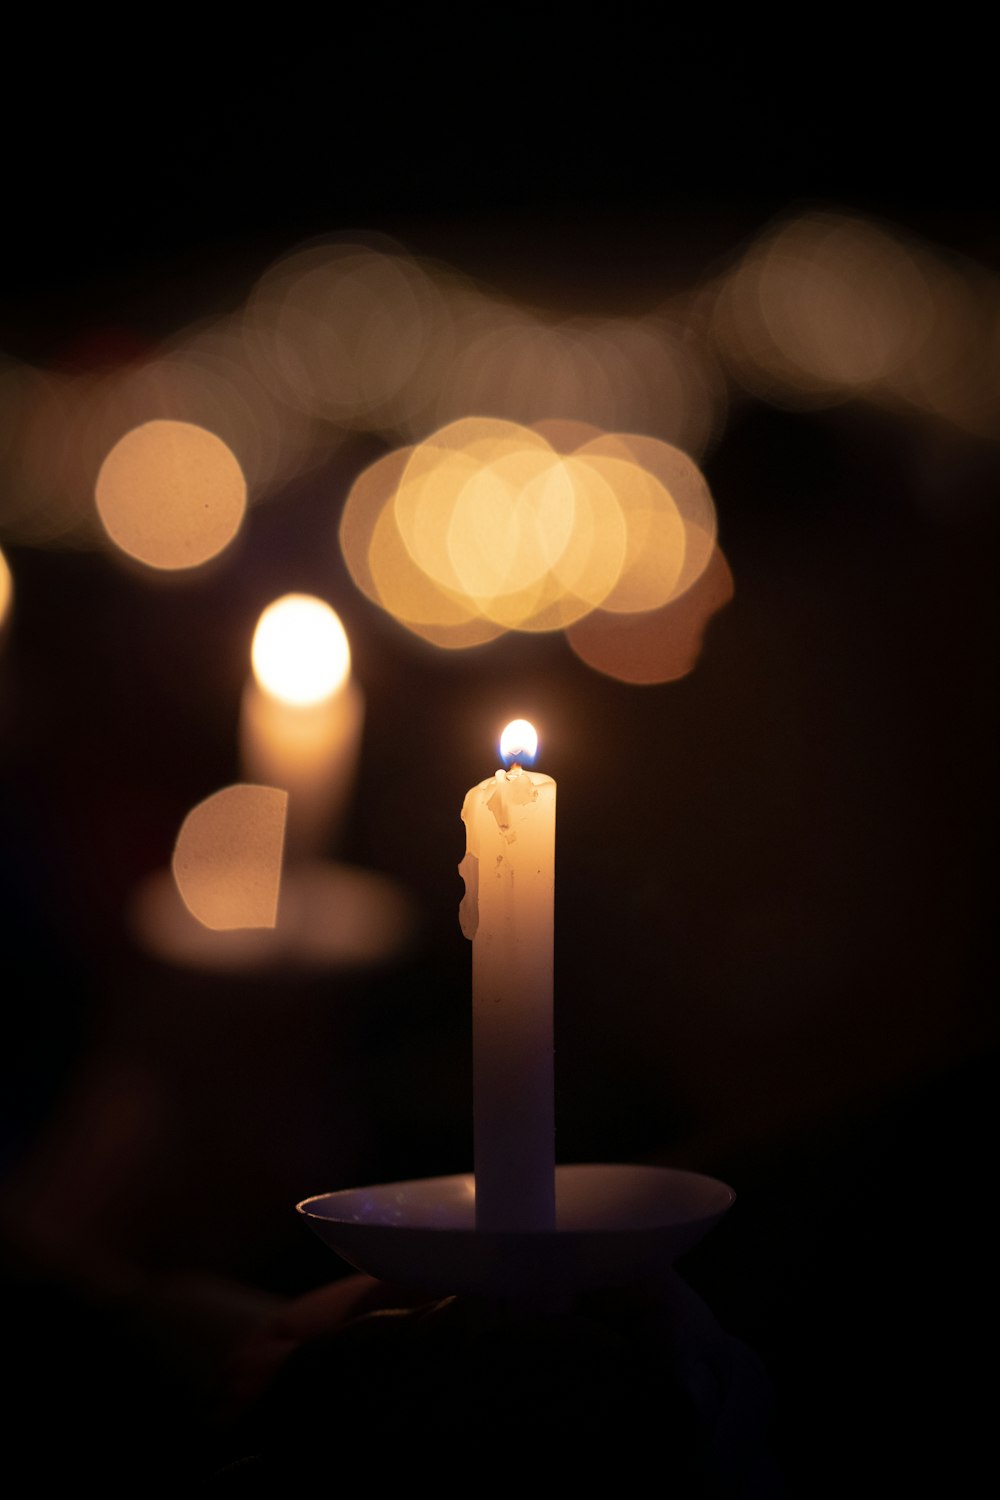 lit candle photo – Free Manger Image on Unsplash